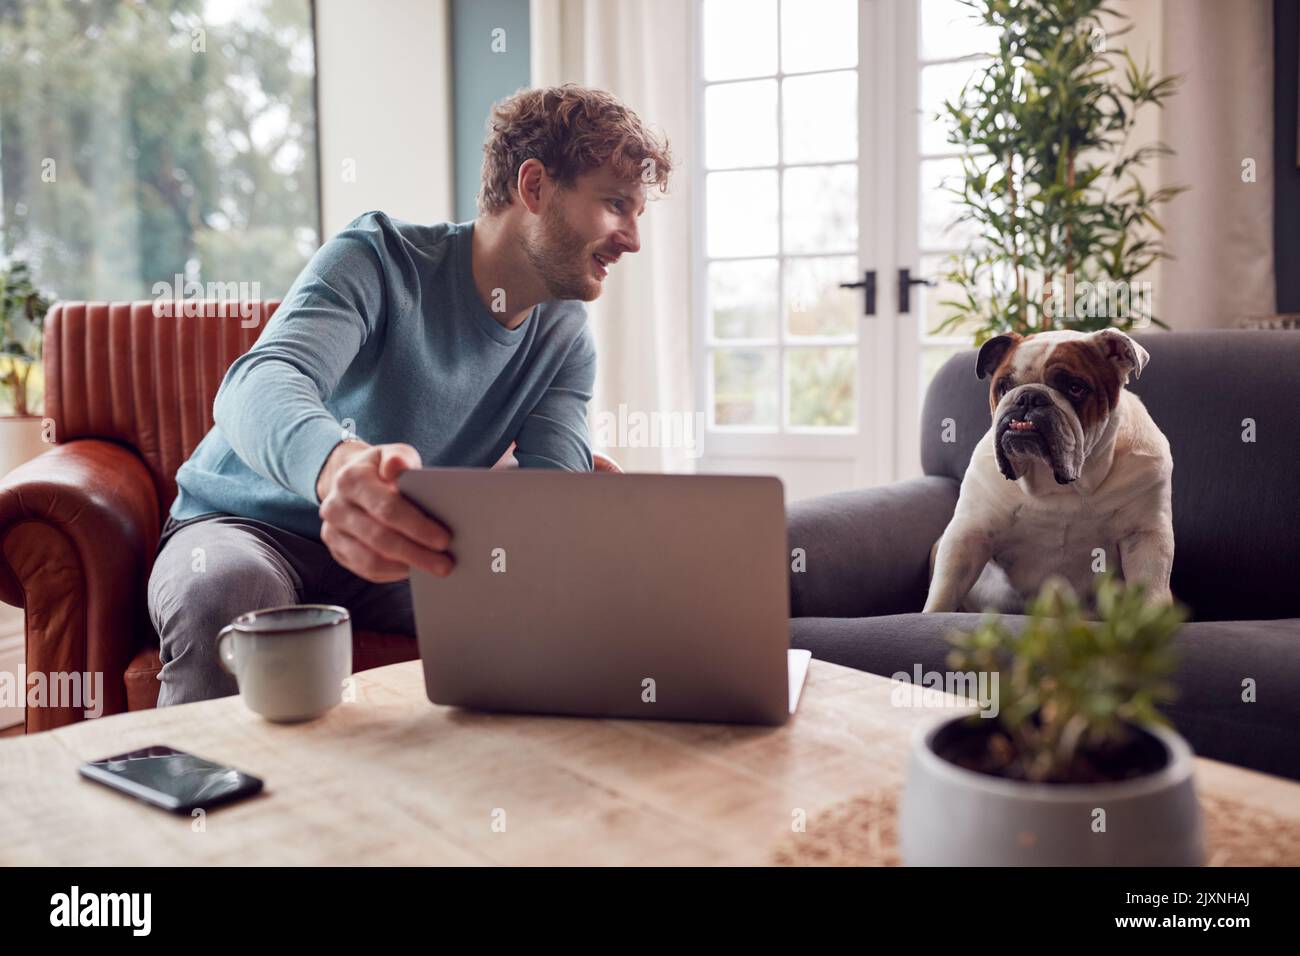 Homme travaillant de la maison sur un ordinateur portable assis avec un chien Bulldog d'animal sur un fauteuil Banque D'Images